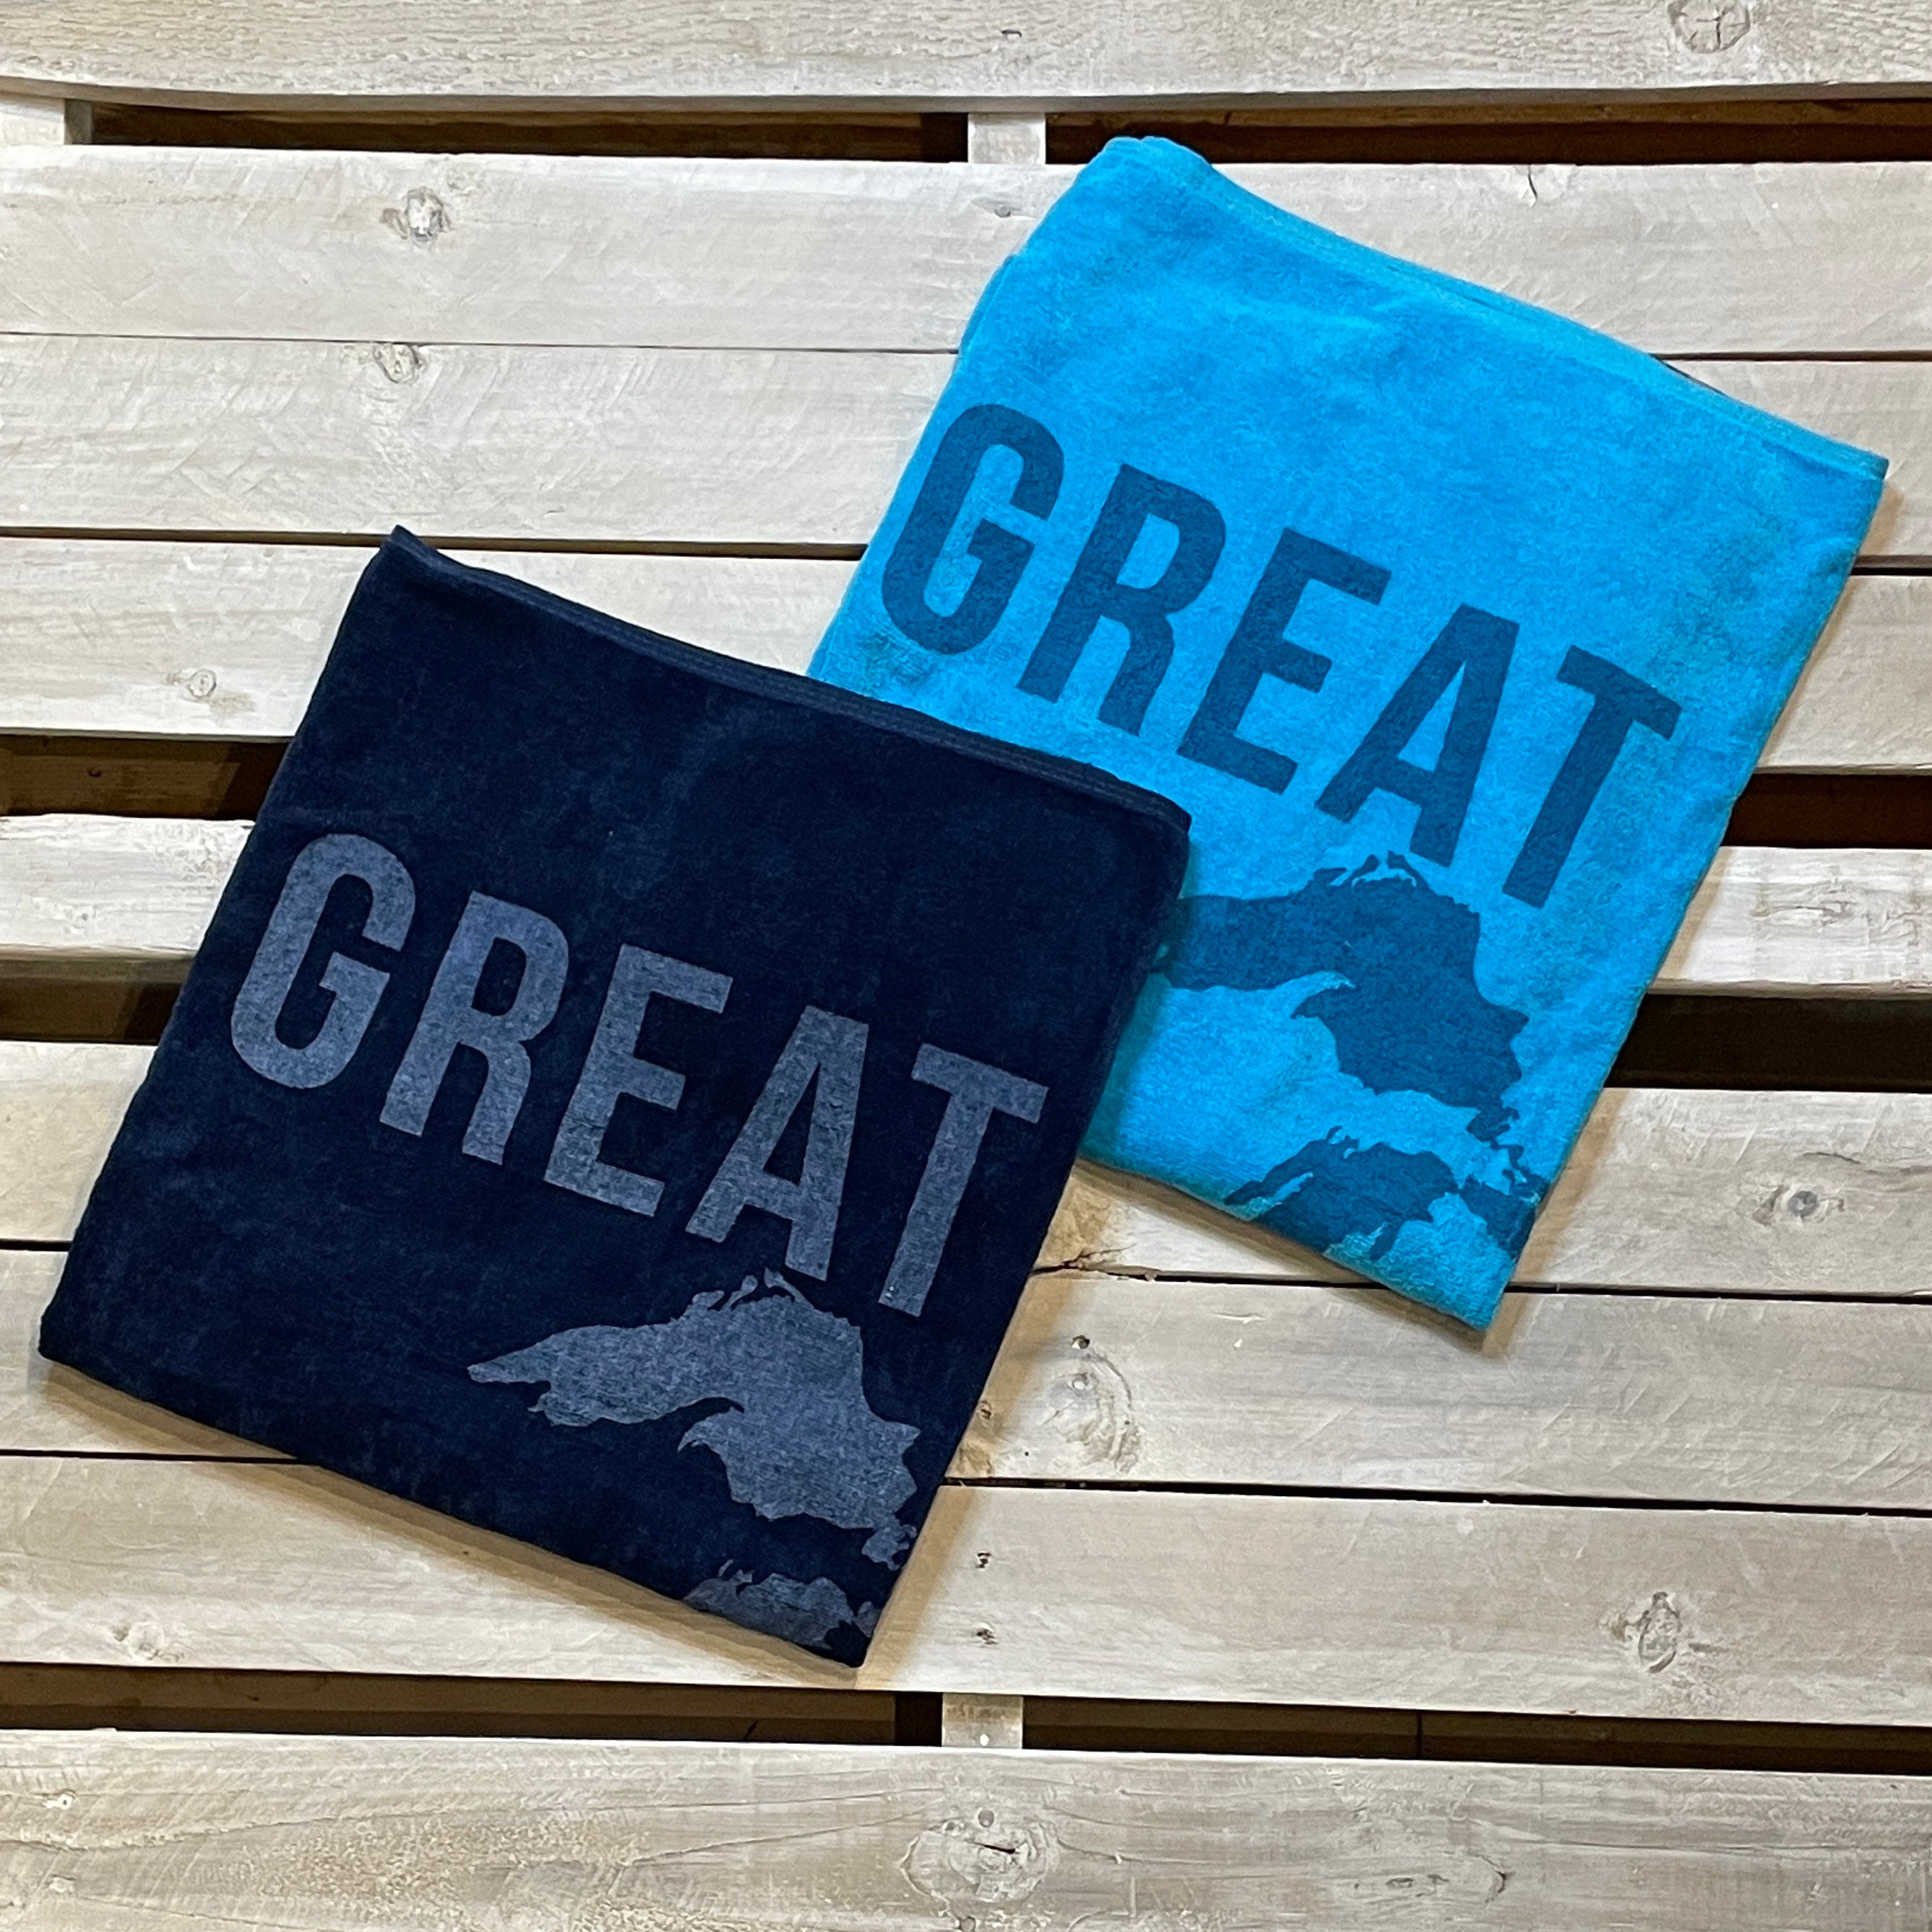 Great Lakes Classics Beach Towel